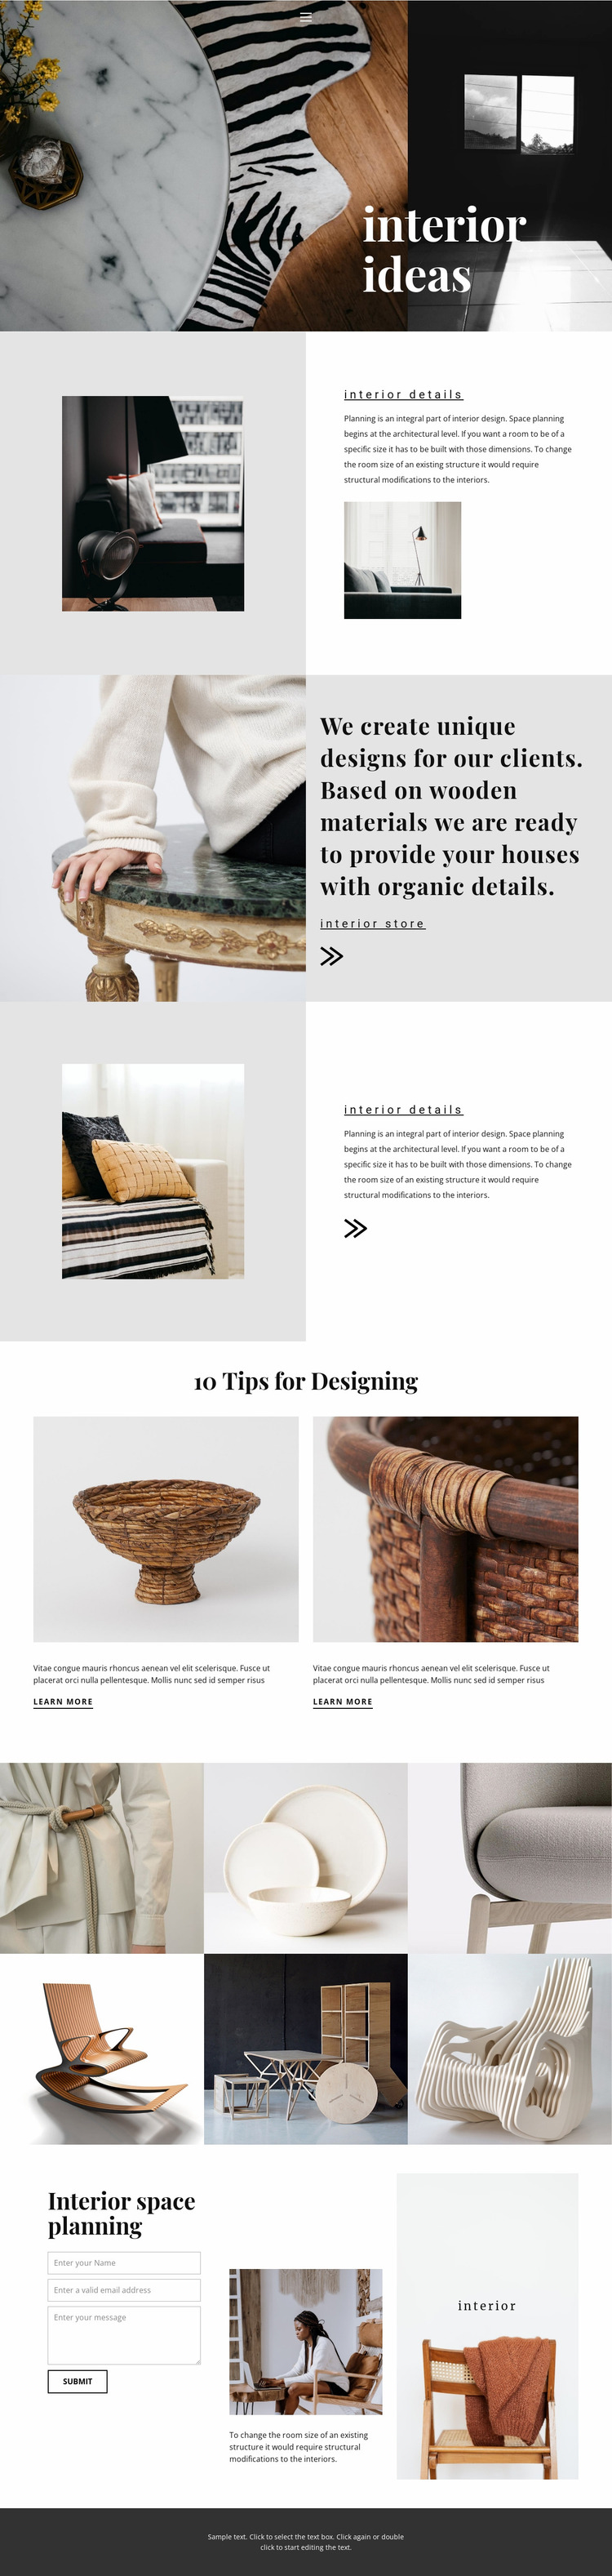 New interior ideas Website Mockup